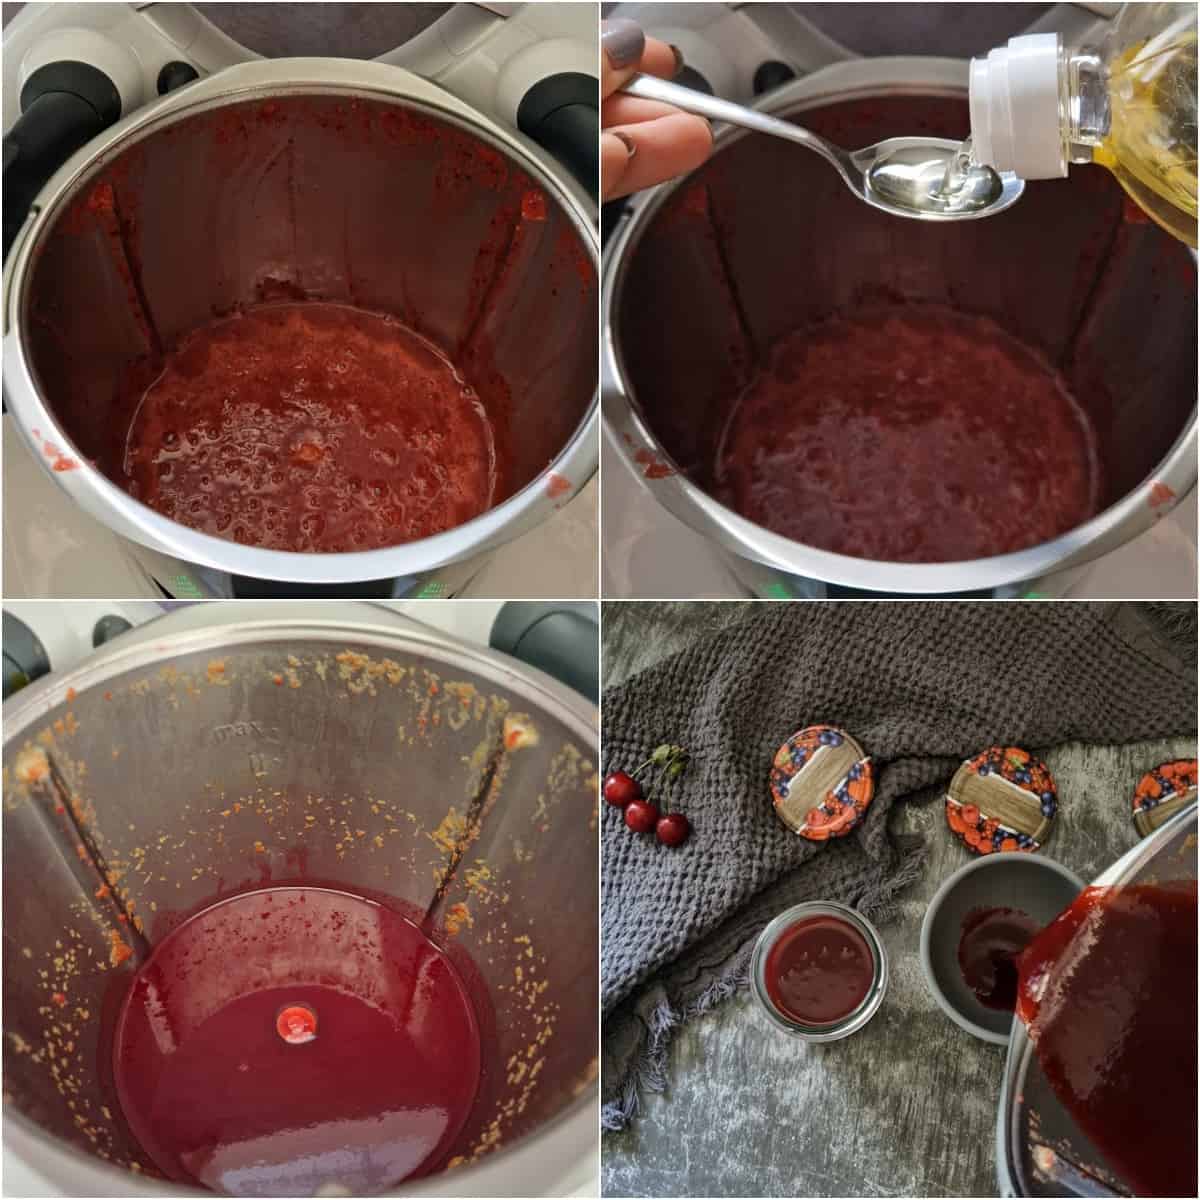 Eine Collage der Zubereitungsschritte für Kirschmarmelade.